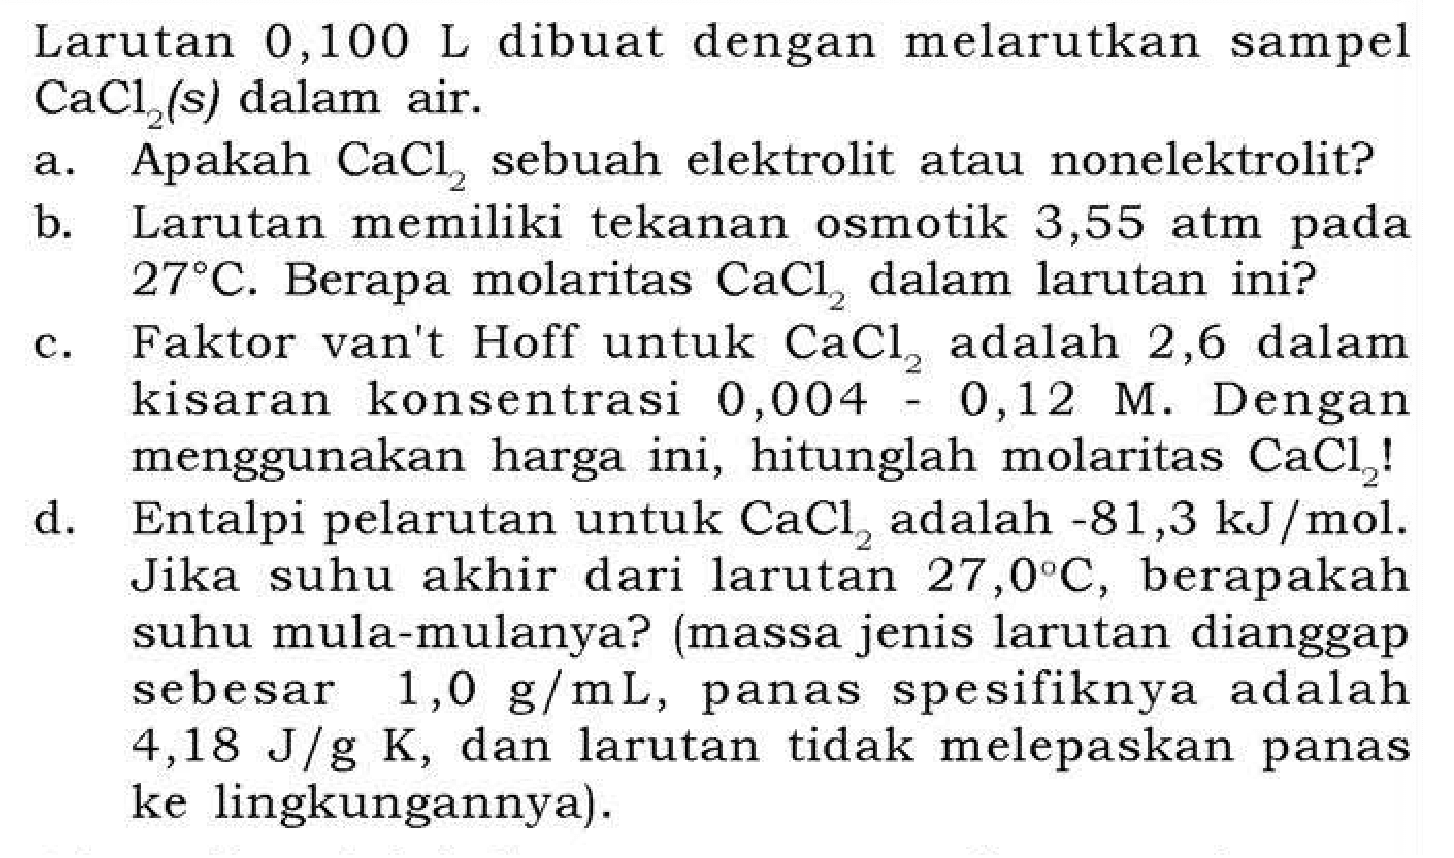 Larutan 0,100 L dibuat dengan melarutkan sampel CaCl2 (s) dalam air.
a. Apakah CaCl2 sebuah elektrolit atau nonelektrolit?
b. Larutan memiliki tekanan osmotik 3,55 atm pada 27 C . Berapa molaritas CaCl2 dalam larutan ini?
c. Faktor van't Hoff untuk CaCl2 adalah 2,6 dalam kisaran konsentrasi 0,004-0,12 M. Dengan menggunakan harga ini, hitunglah molaritas CaCl2 !
d. Entalpi pelarutan untuk CaCl2 adalah -81,3 kJ / mol. Jika suhu akhir dari larutan 27,0 C, berapakah suhu mula-mulanya? (massa jenis larutan dianggap sebesar 1,0 g / mL , panas spesifiknya adalah 4,18 J / g K, dan larutan tidak melepaskan panas ke lingkungannya).